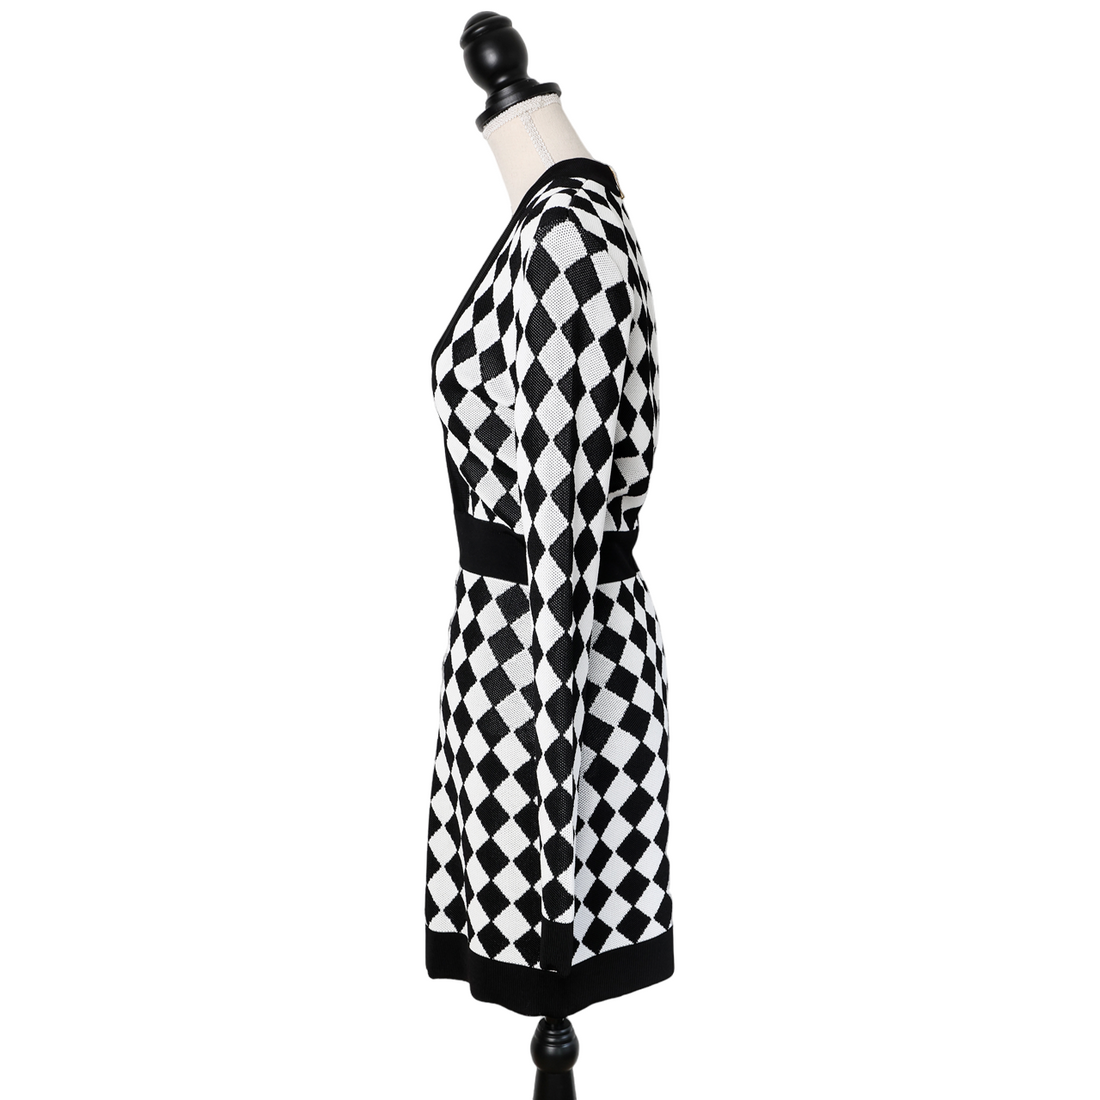 Balmain Bodycon Dress im Schachbrett-Muster